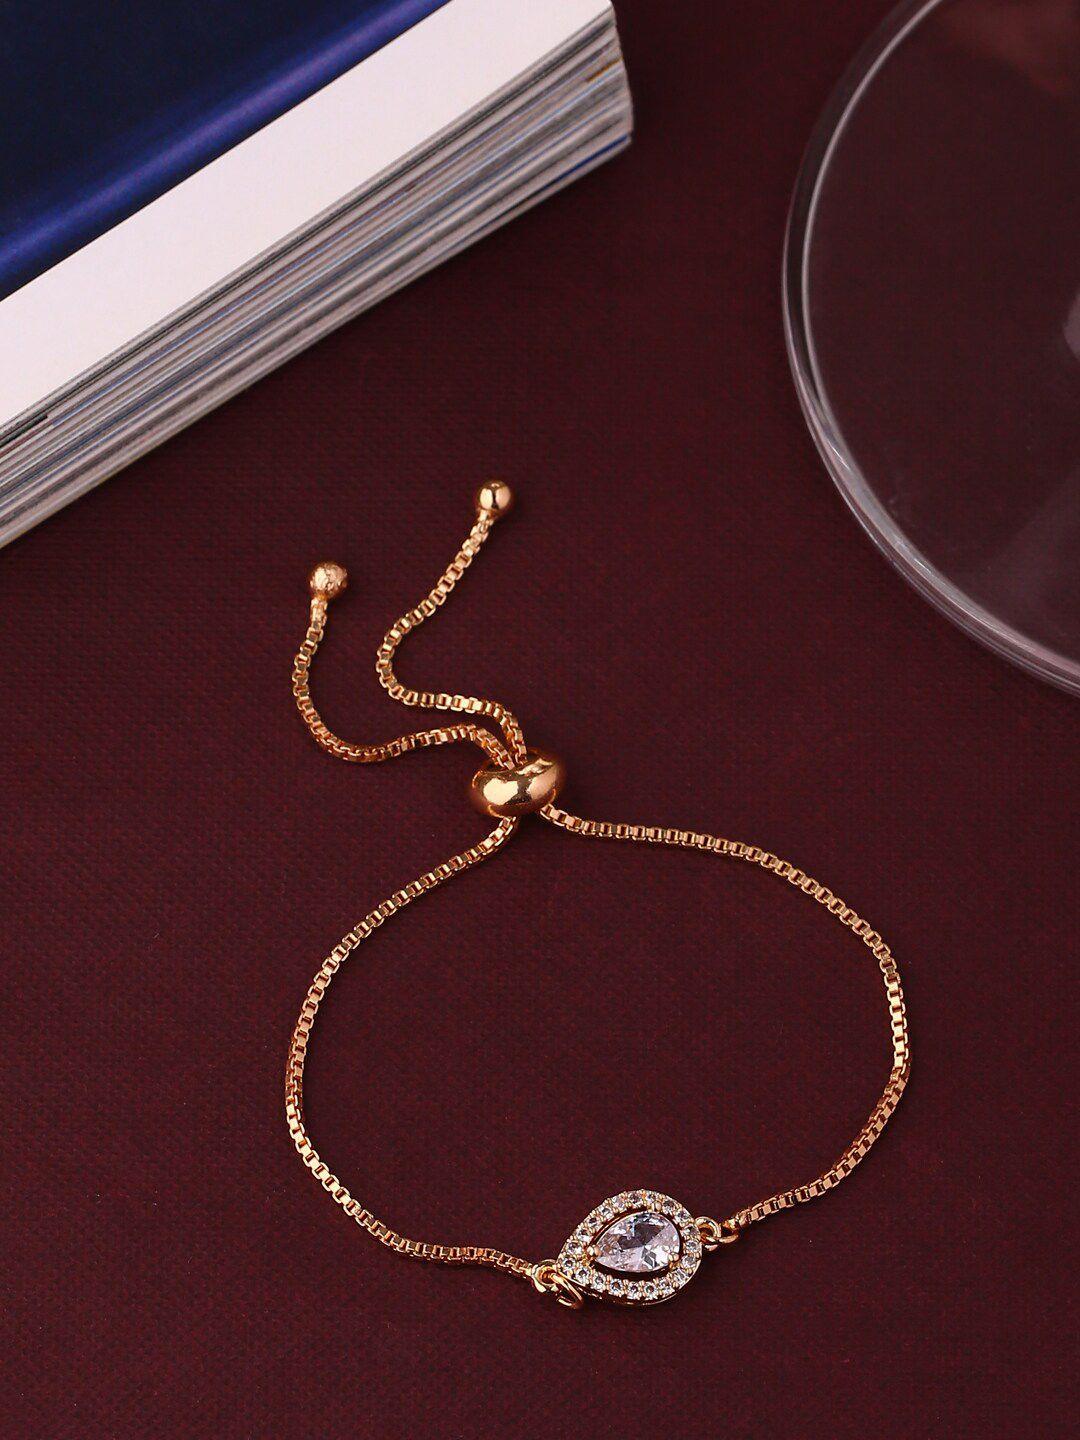 shoshaa rose gold-plated handcrafted wraparound bracelet